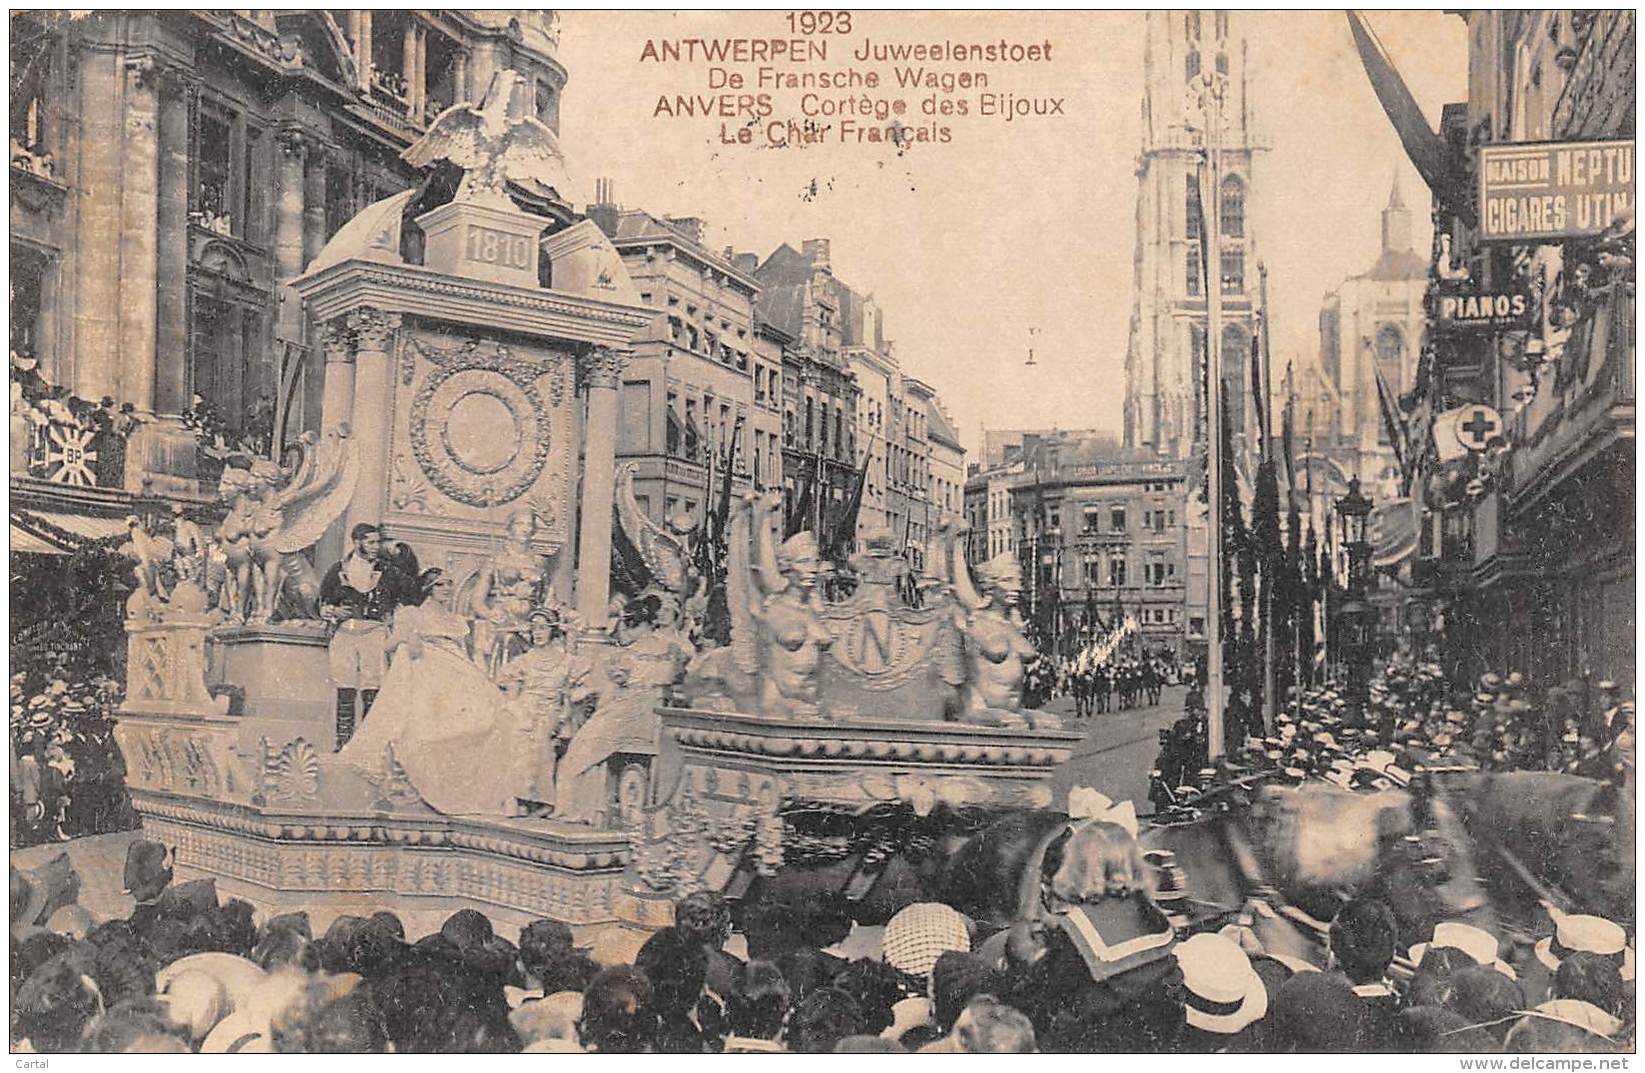 ANTWERPEN - 1923 - Juweelenstoet - De Fransche Wagen - Antwerpen